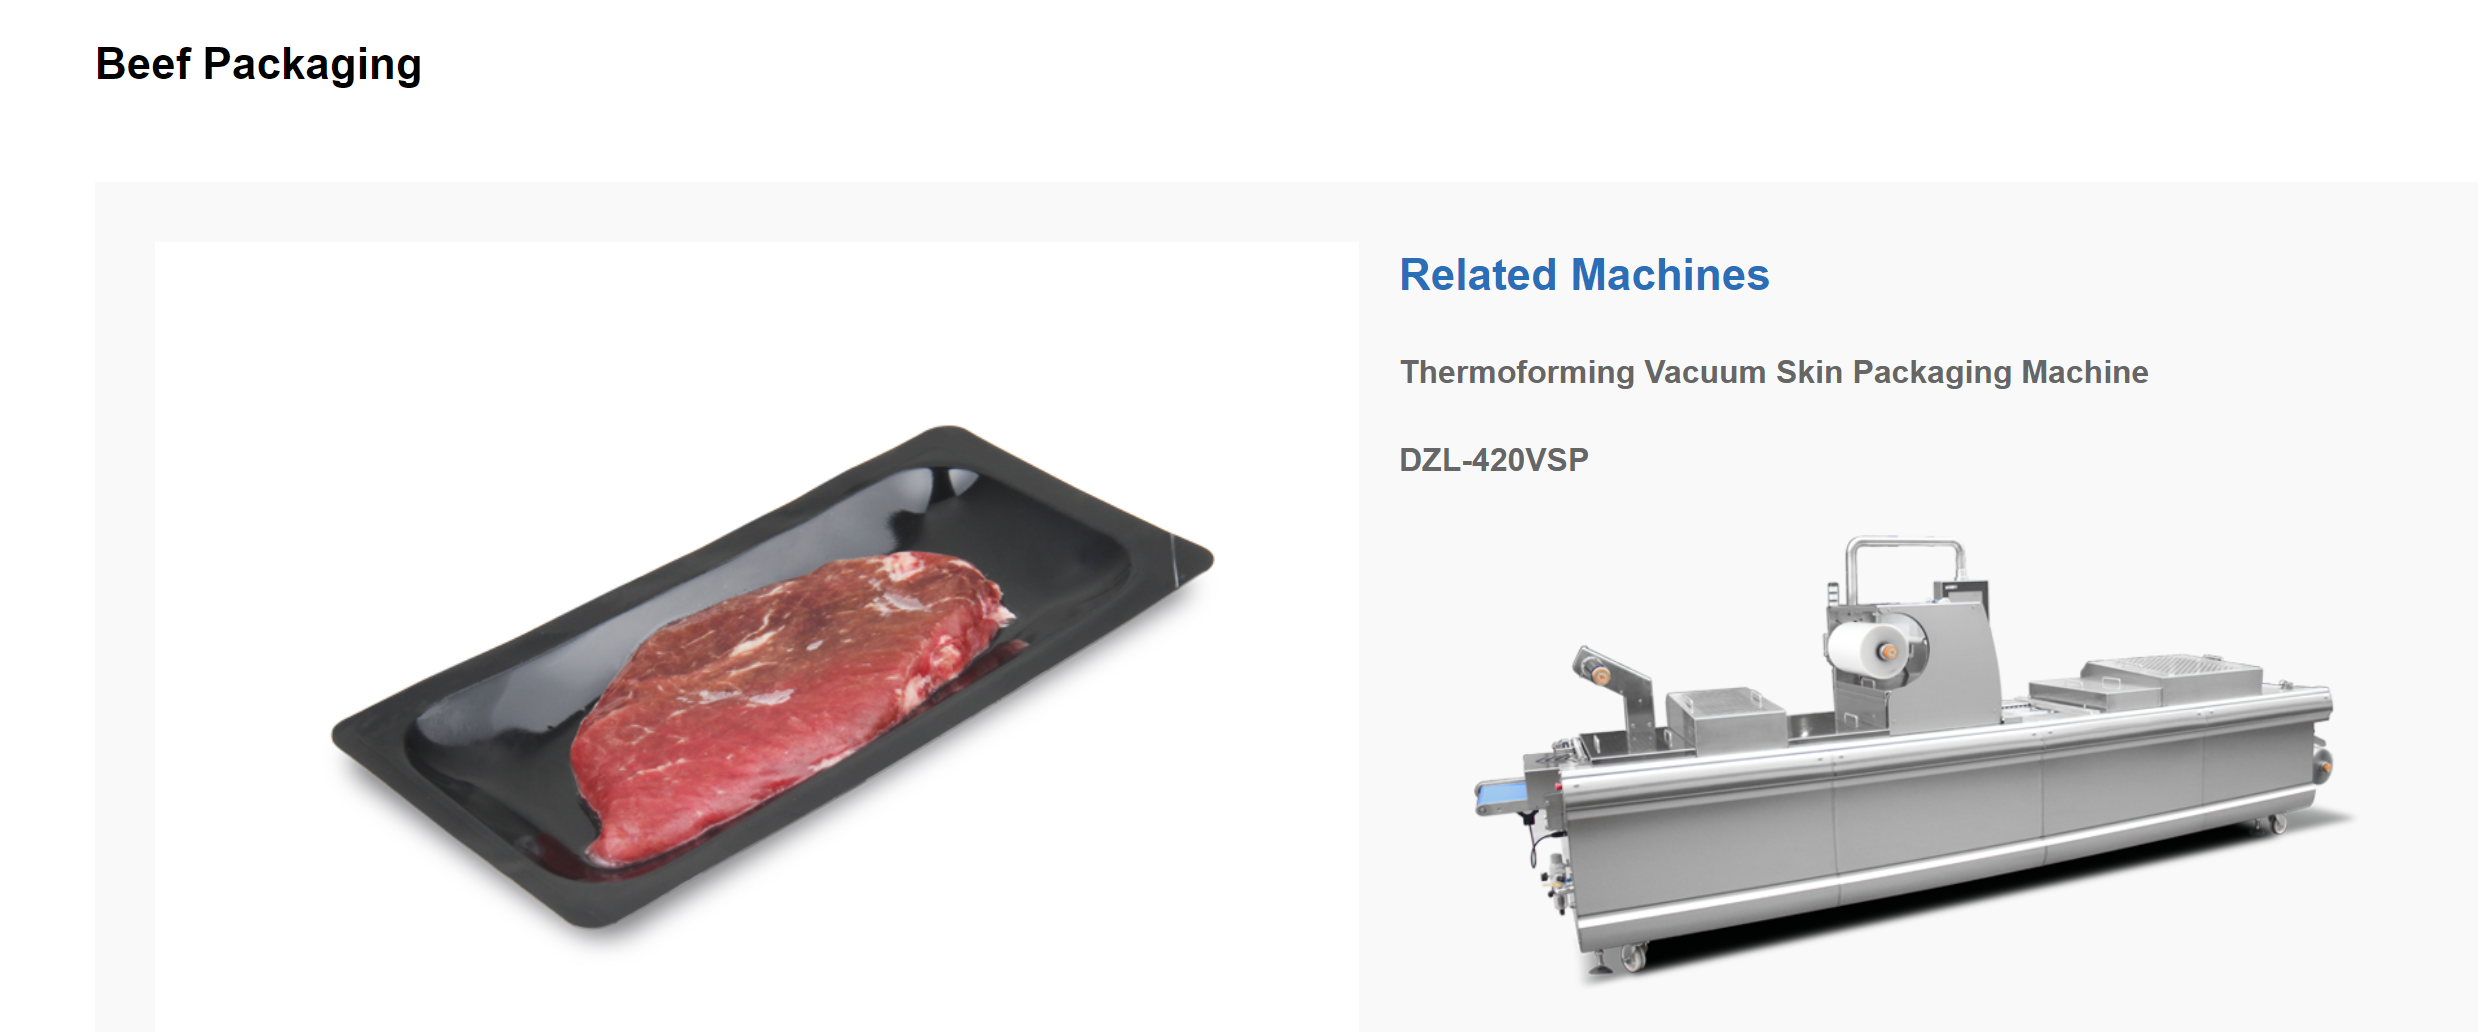 Kā lietot gaļas termoformēšanas vakuuma iepakošanas mašīnu